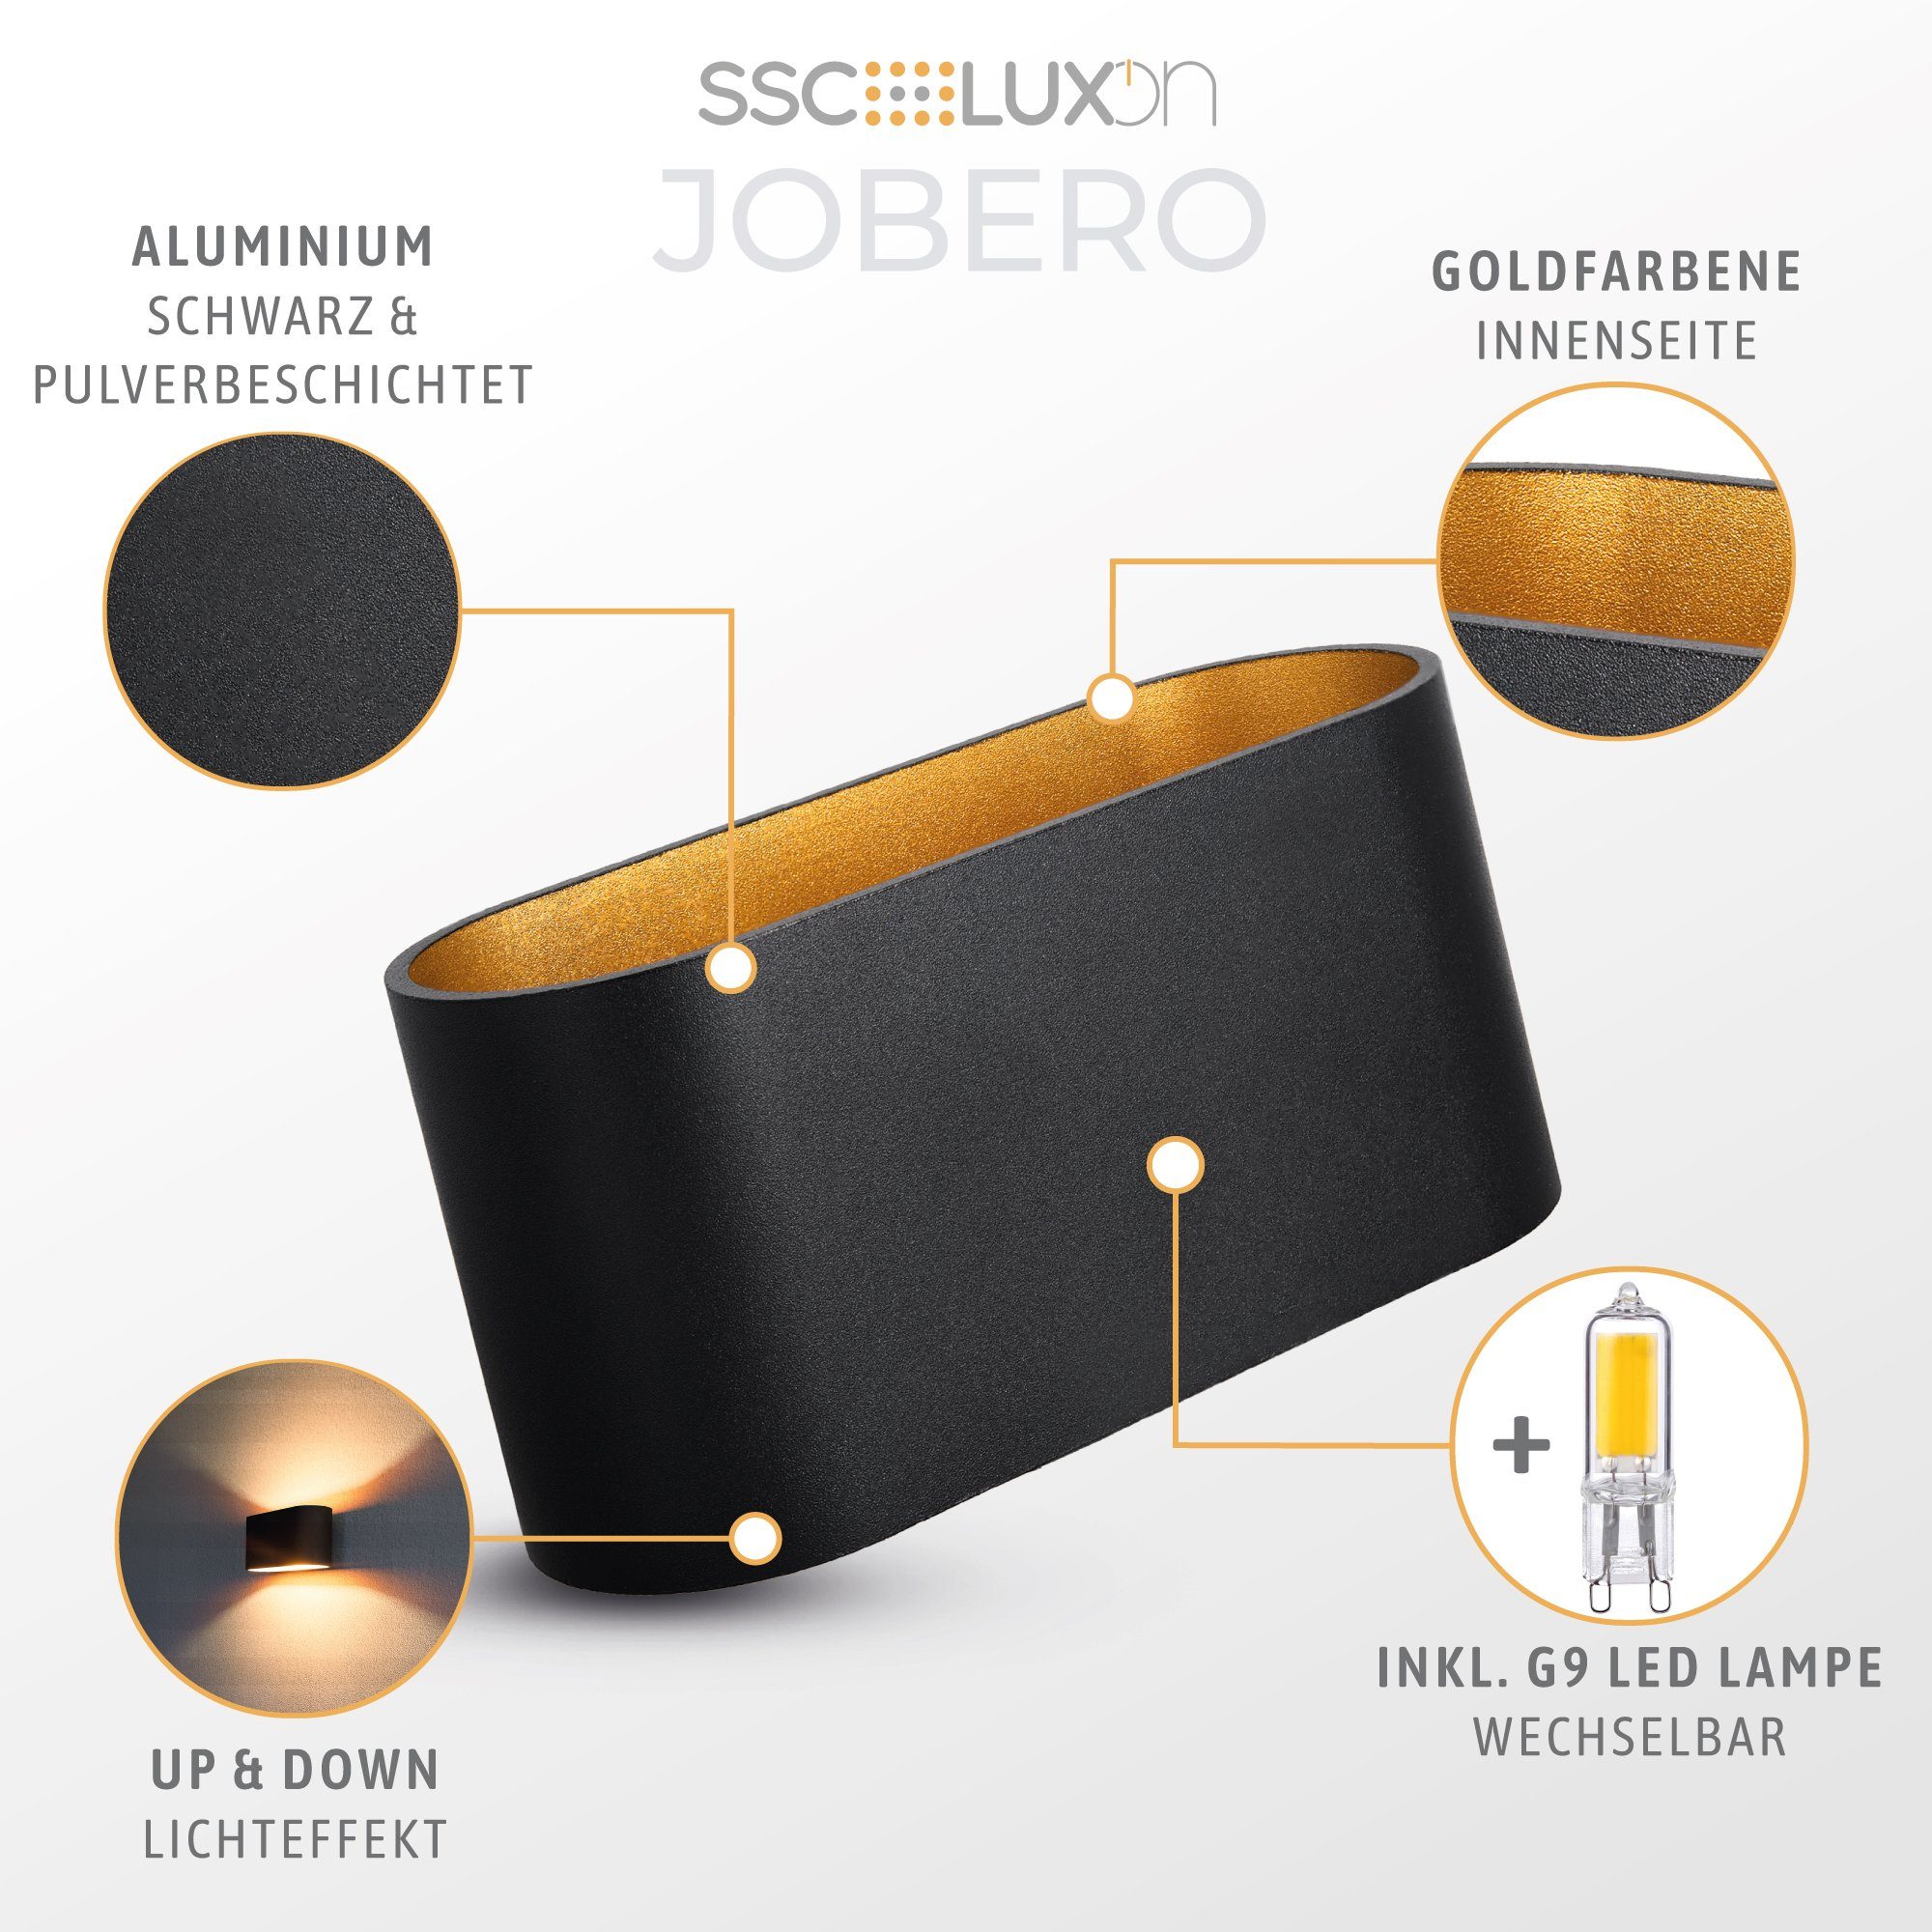 SSC-LUXon G9 Warmweiß LED warmweiß, mit Up Wandleuchte Wandleuchte gold LED schwarz Down JOBERO